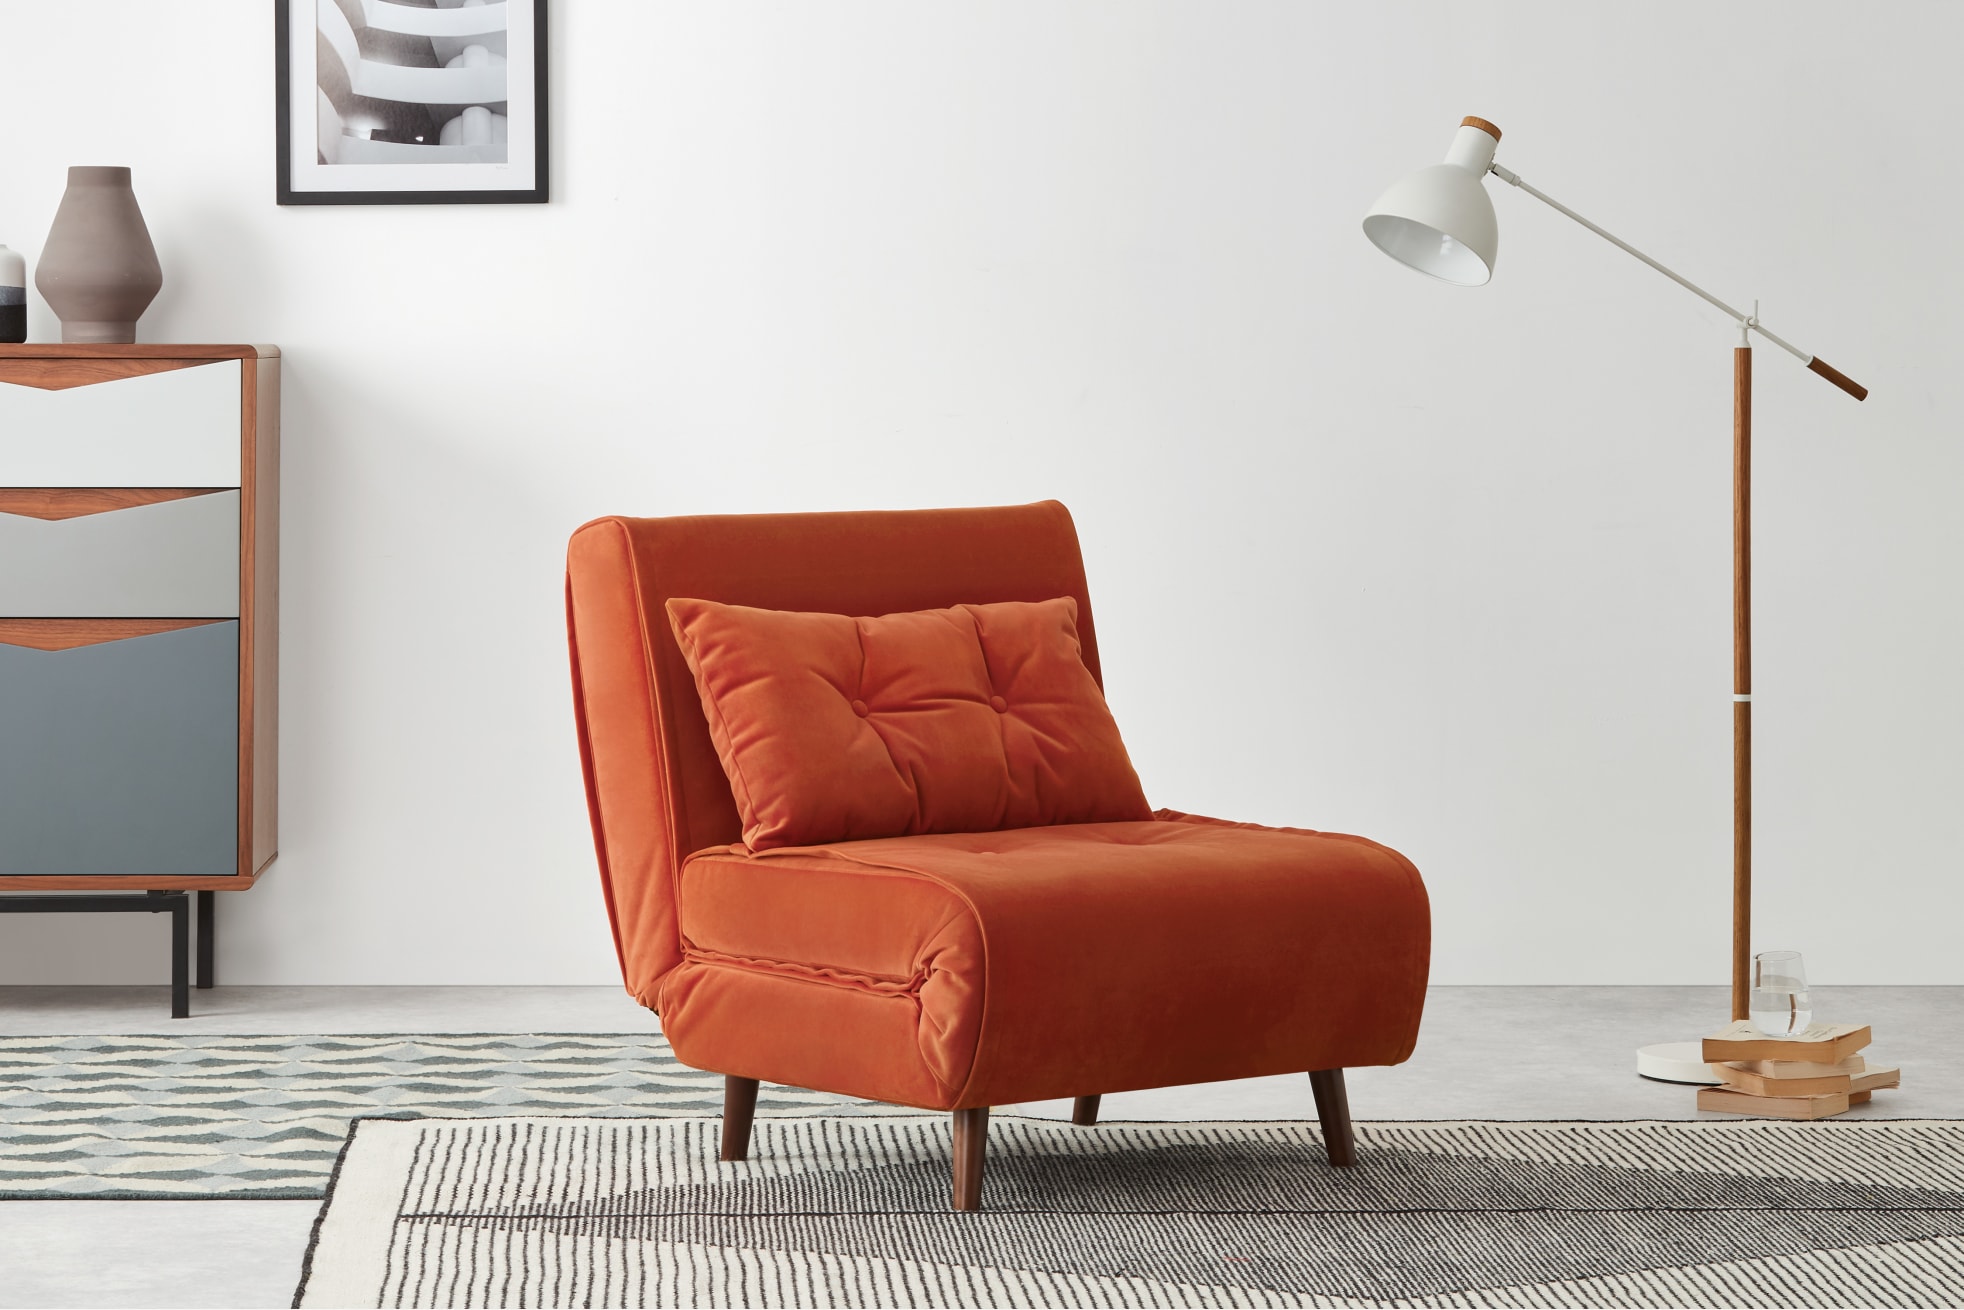 Stylish sofa bed alternative in Tangerine Orange